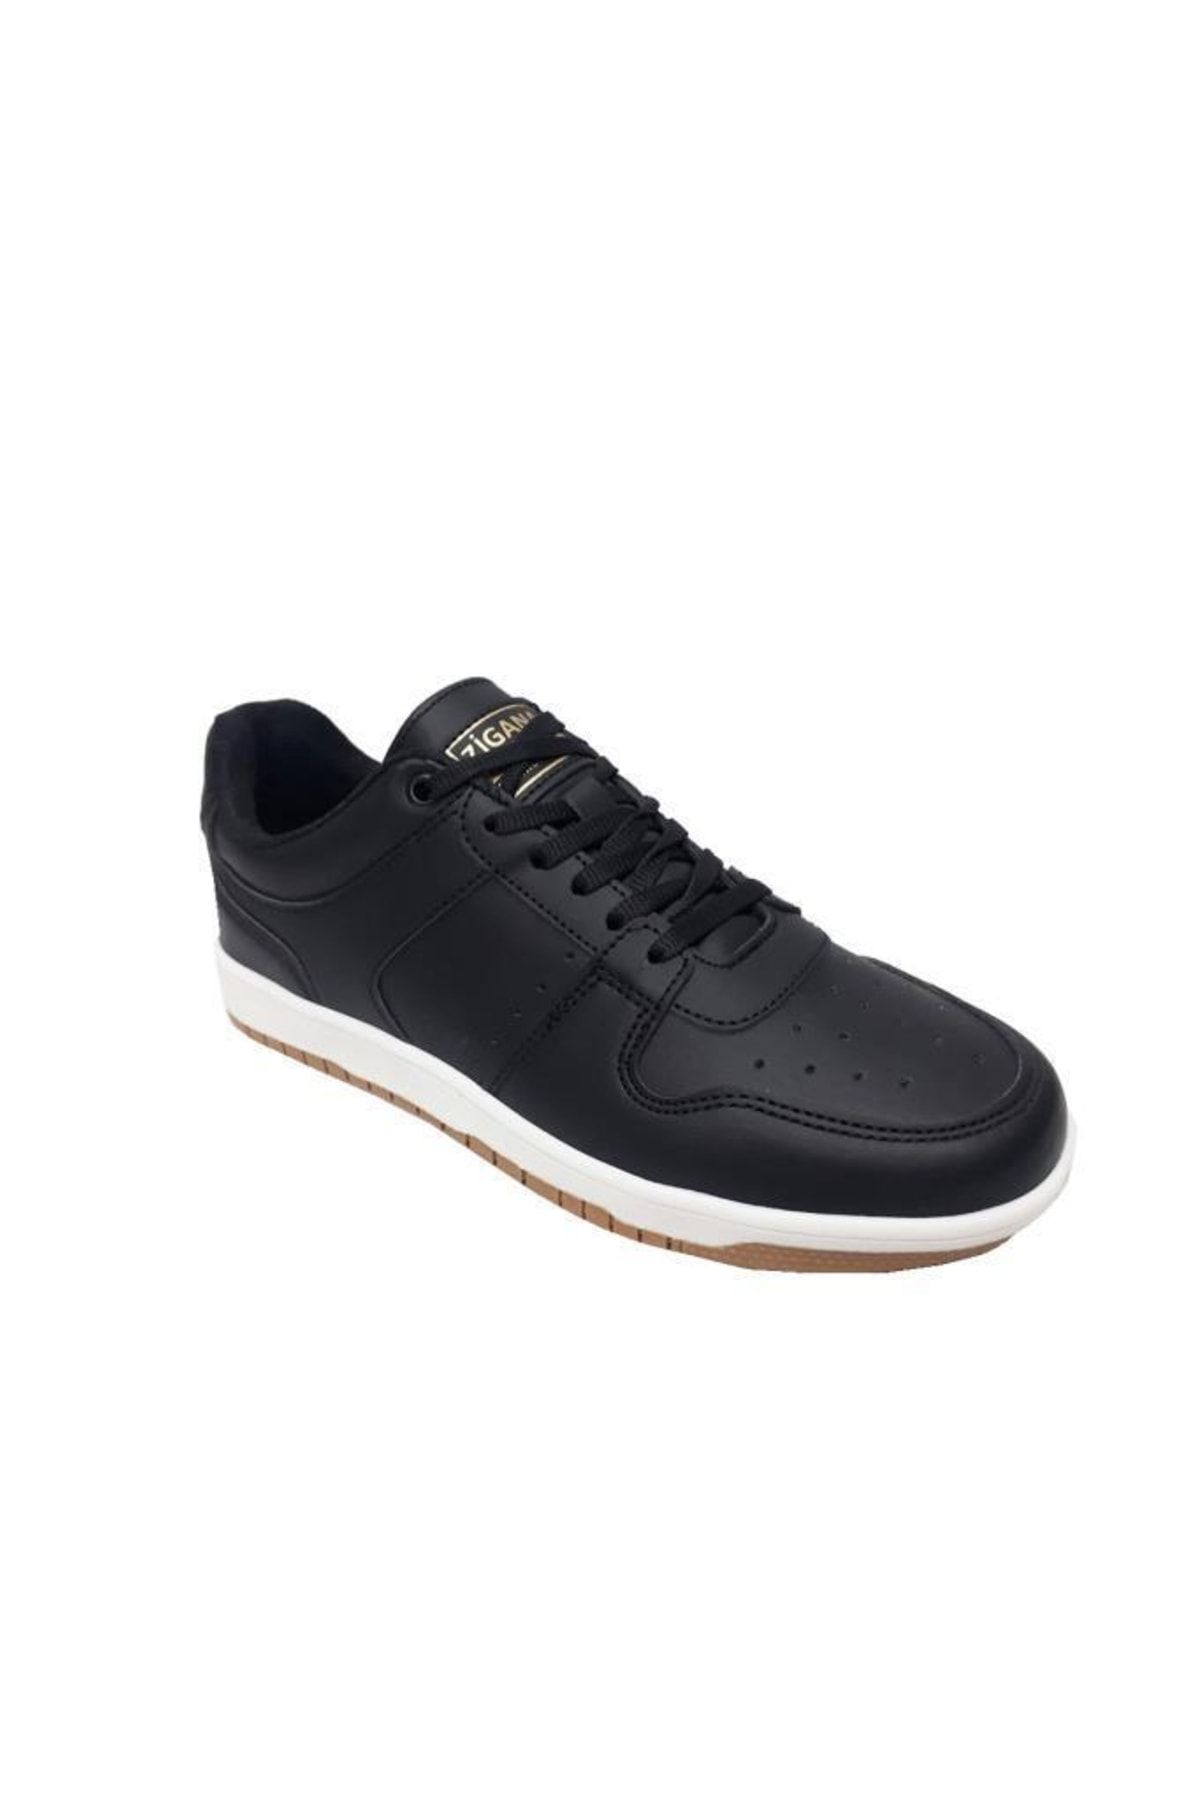 Zigana Siyah - 2504 Deri Erkek Sneakers Ayakkabı